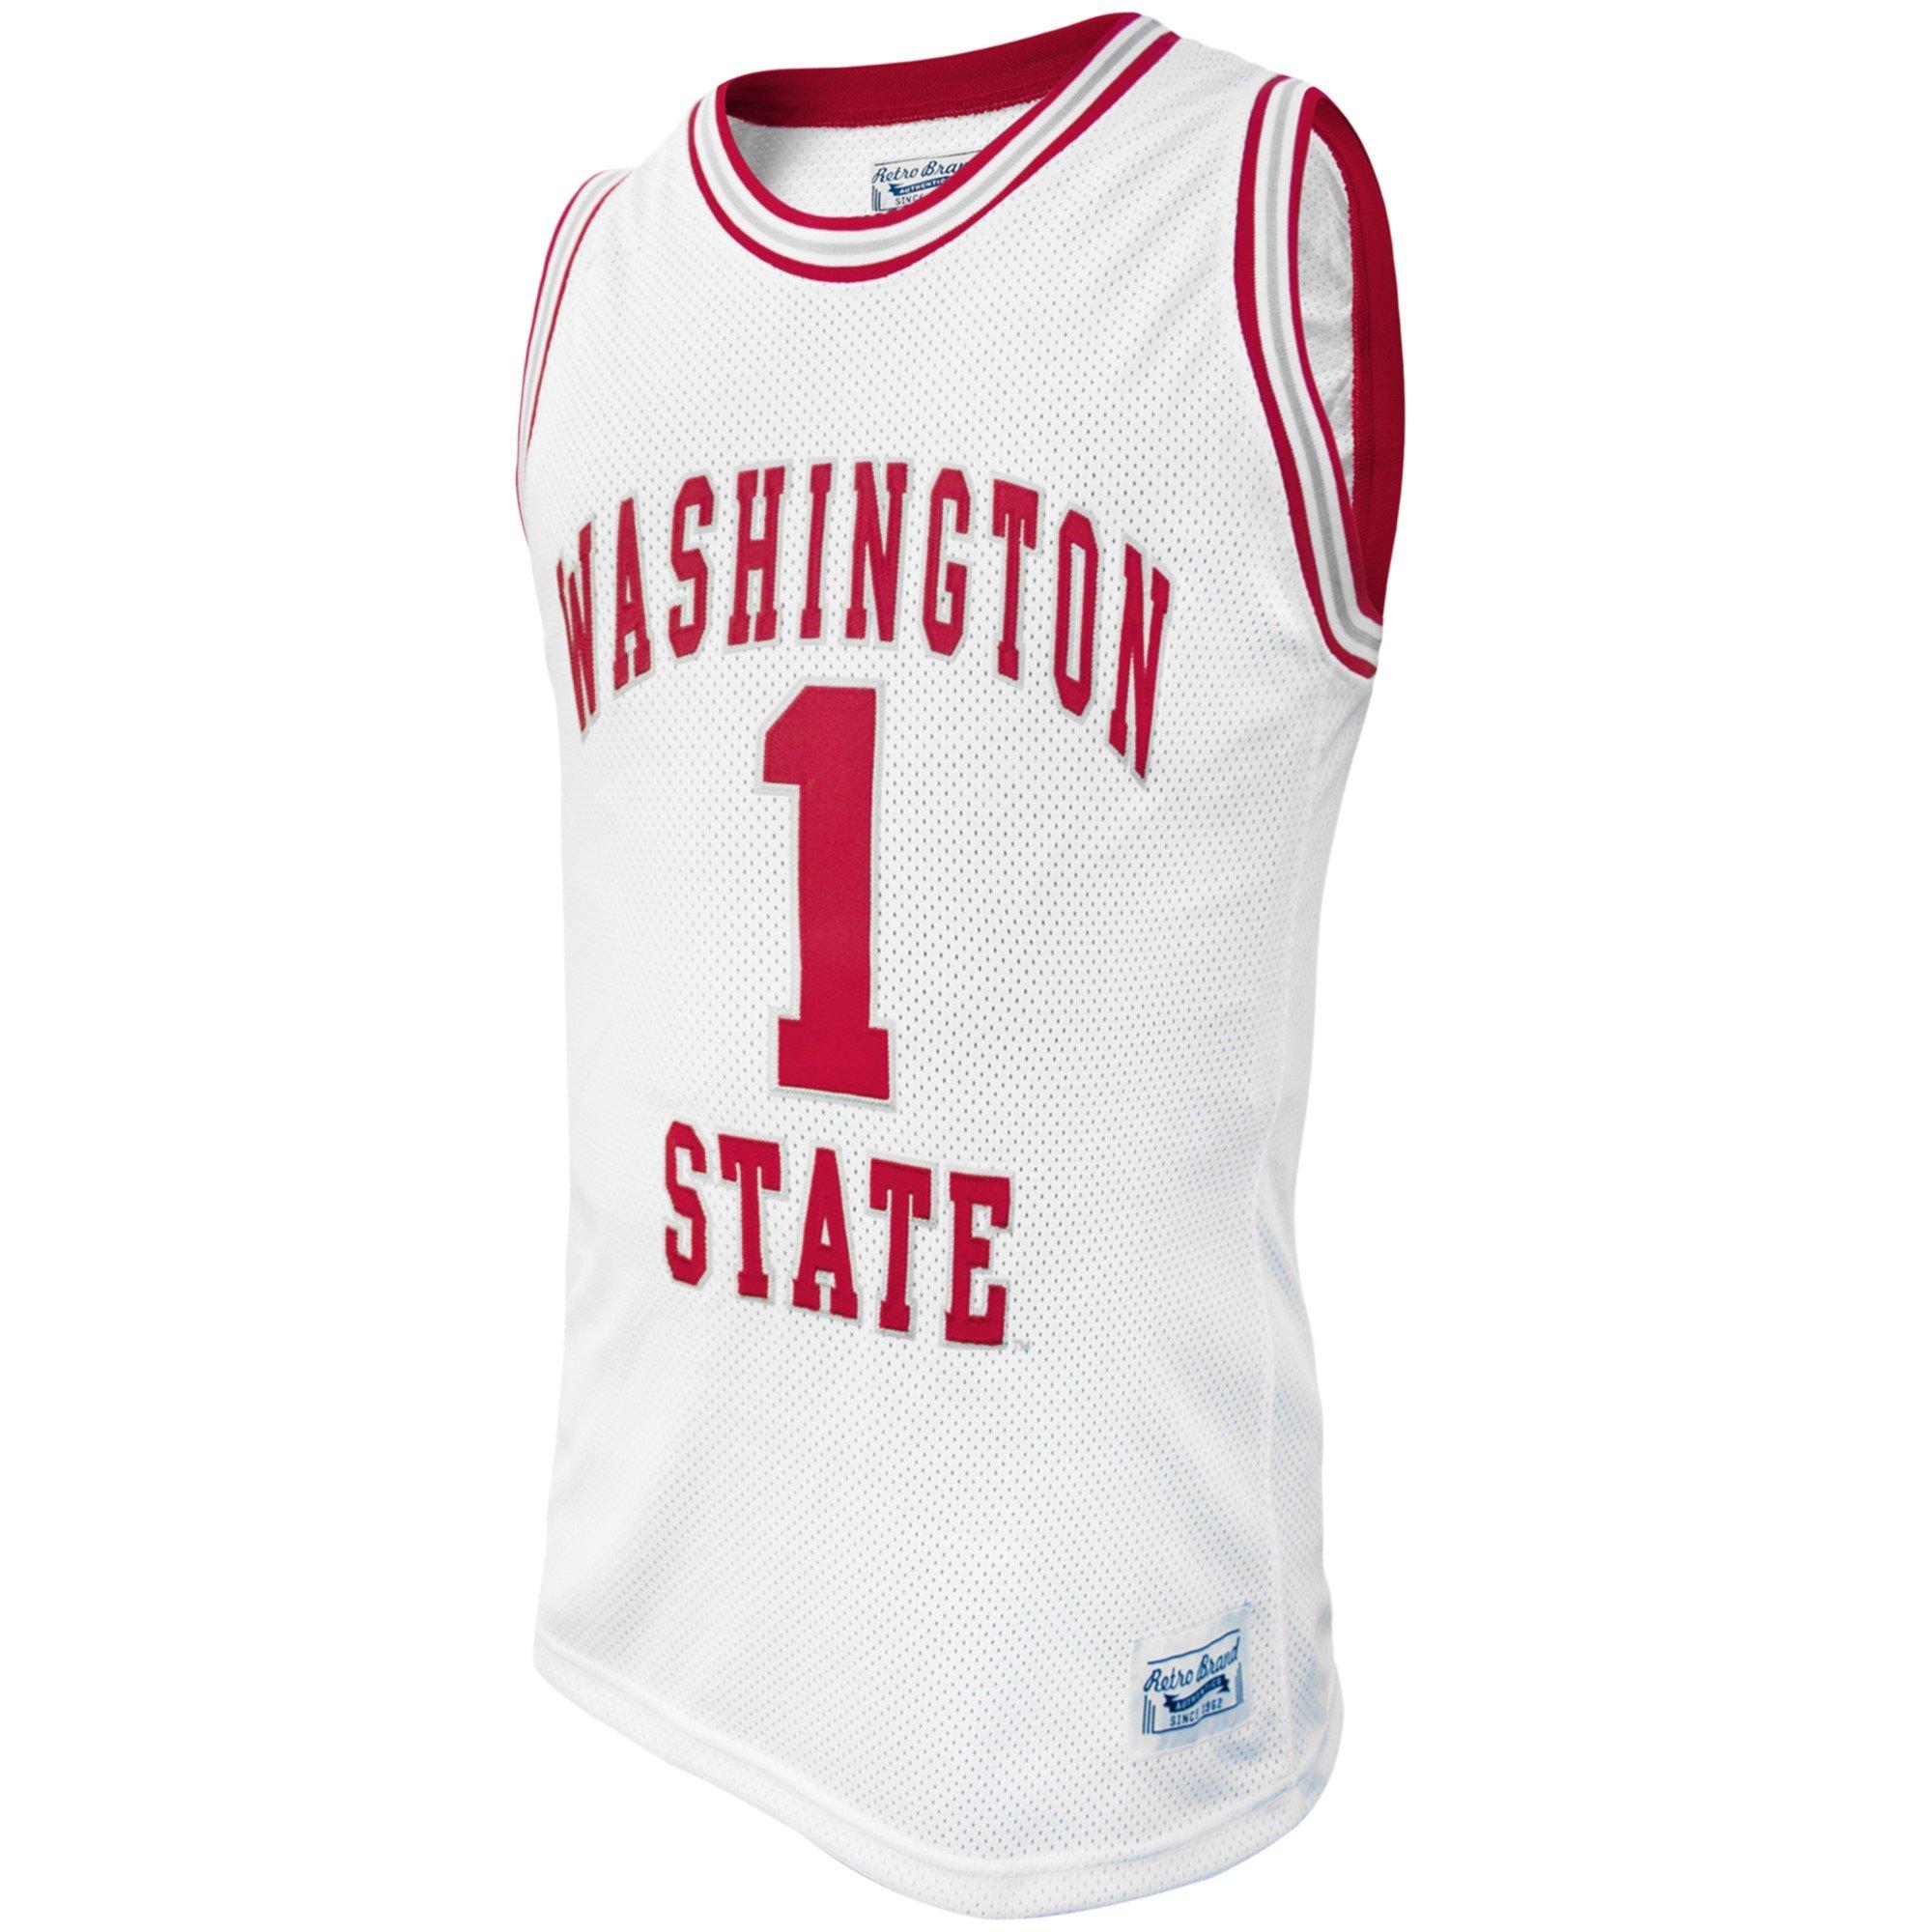 washington state basketball jersey